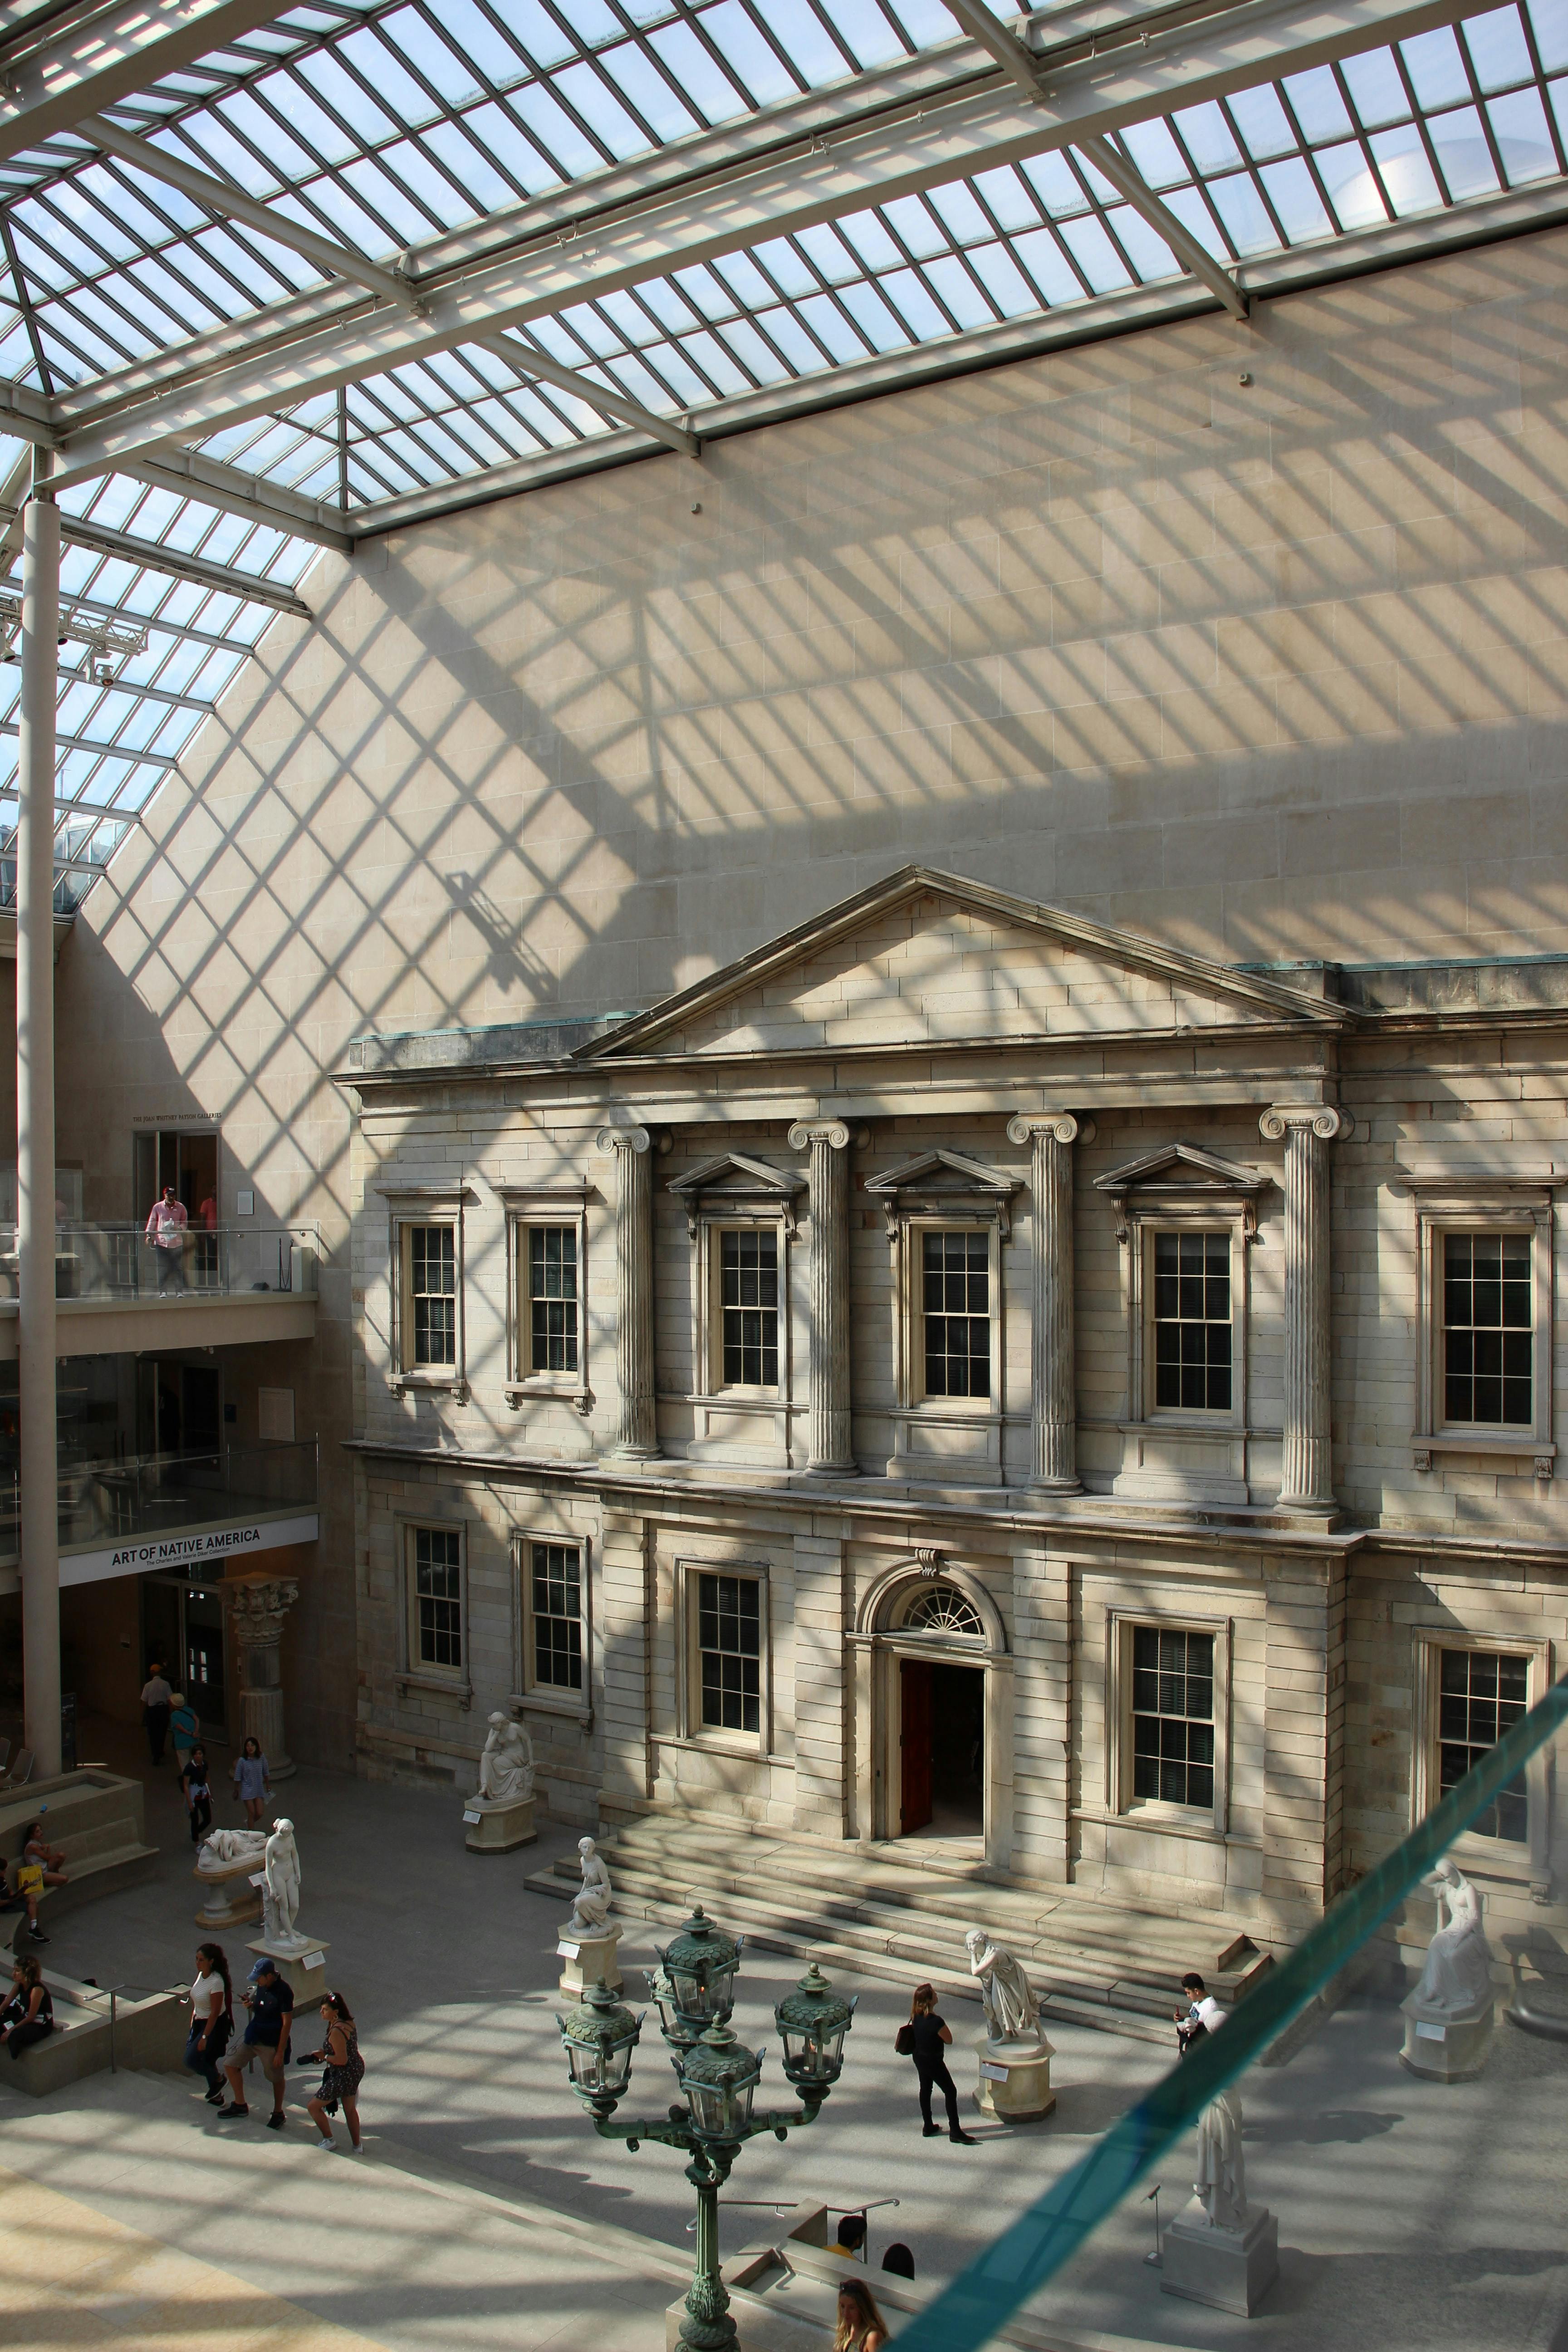 Metropolitan Museum of Art, Bags